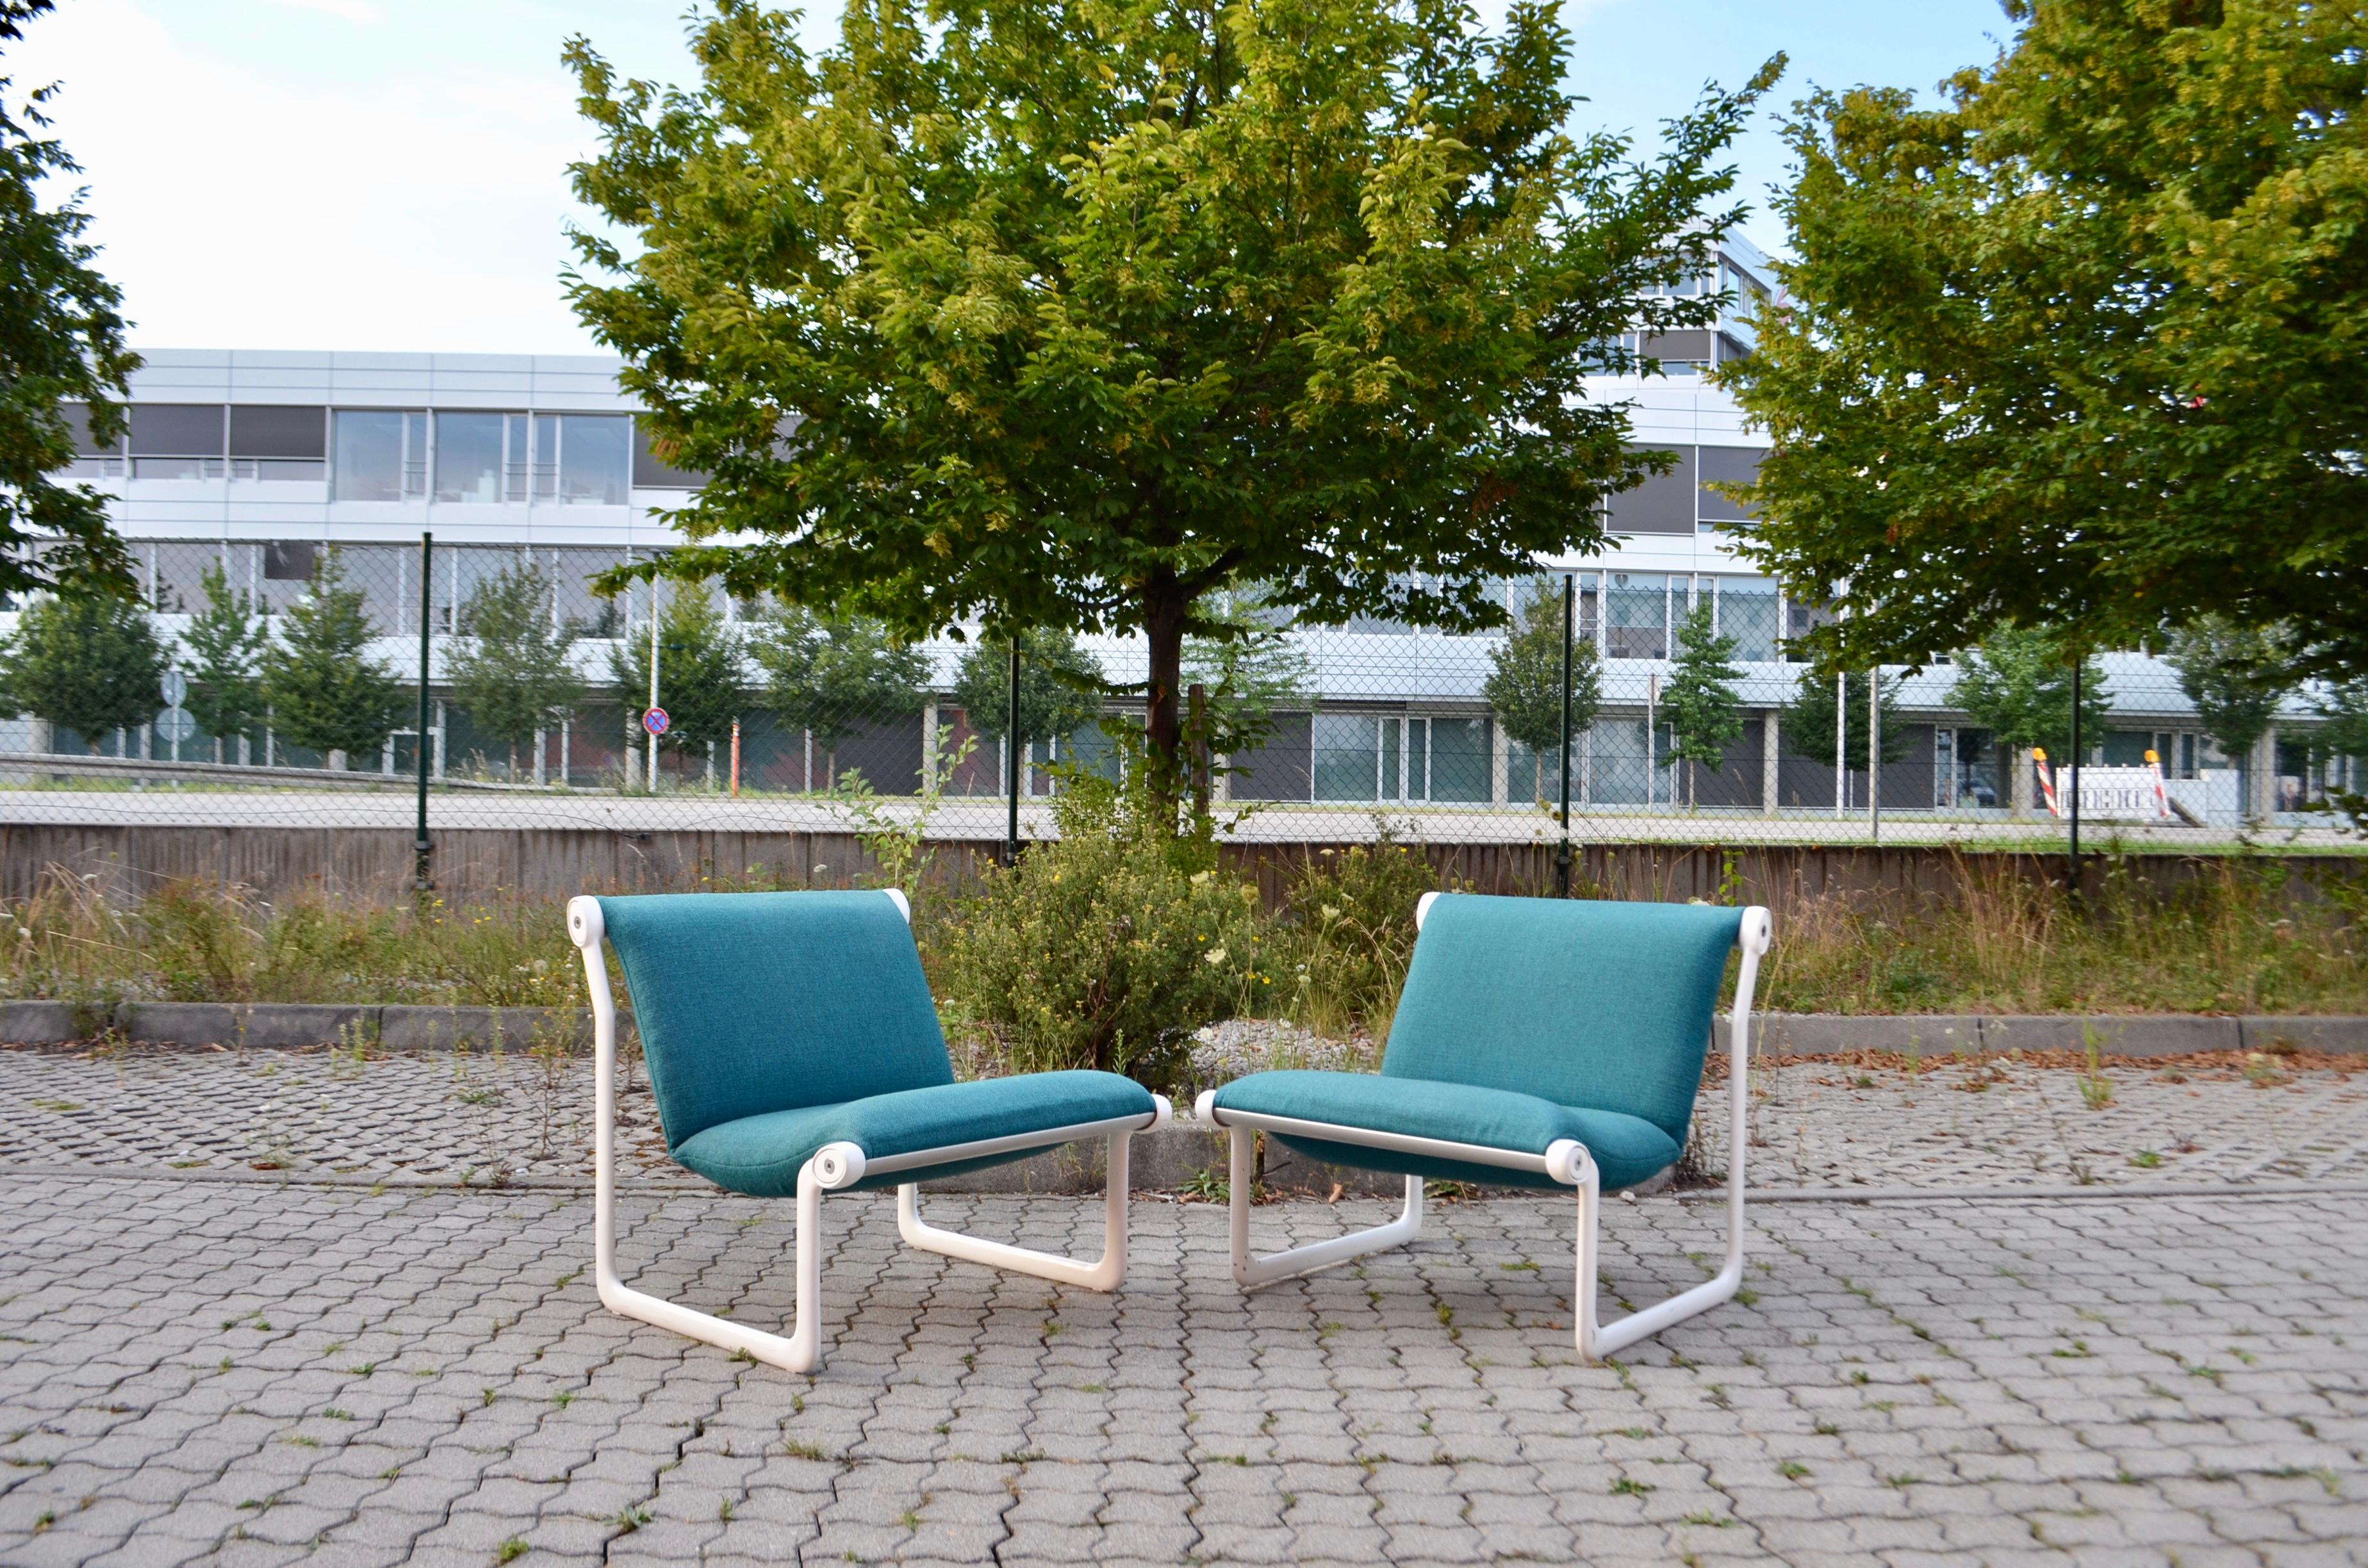 Diese Stühle wurden von Knoll International hergestellt.
Bruce Hannah & Andrew Morrison entwarfen es um 1970 und es wurde sowohl in öffentlichen Räumen als auch in ROOMS verwendet.
Der Metallrahmen ist aus Aluminium gegossen und mit einer weißen